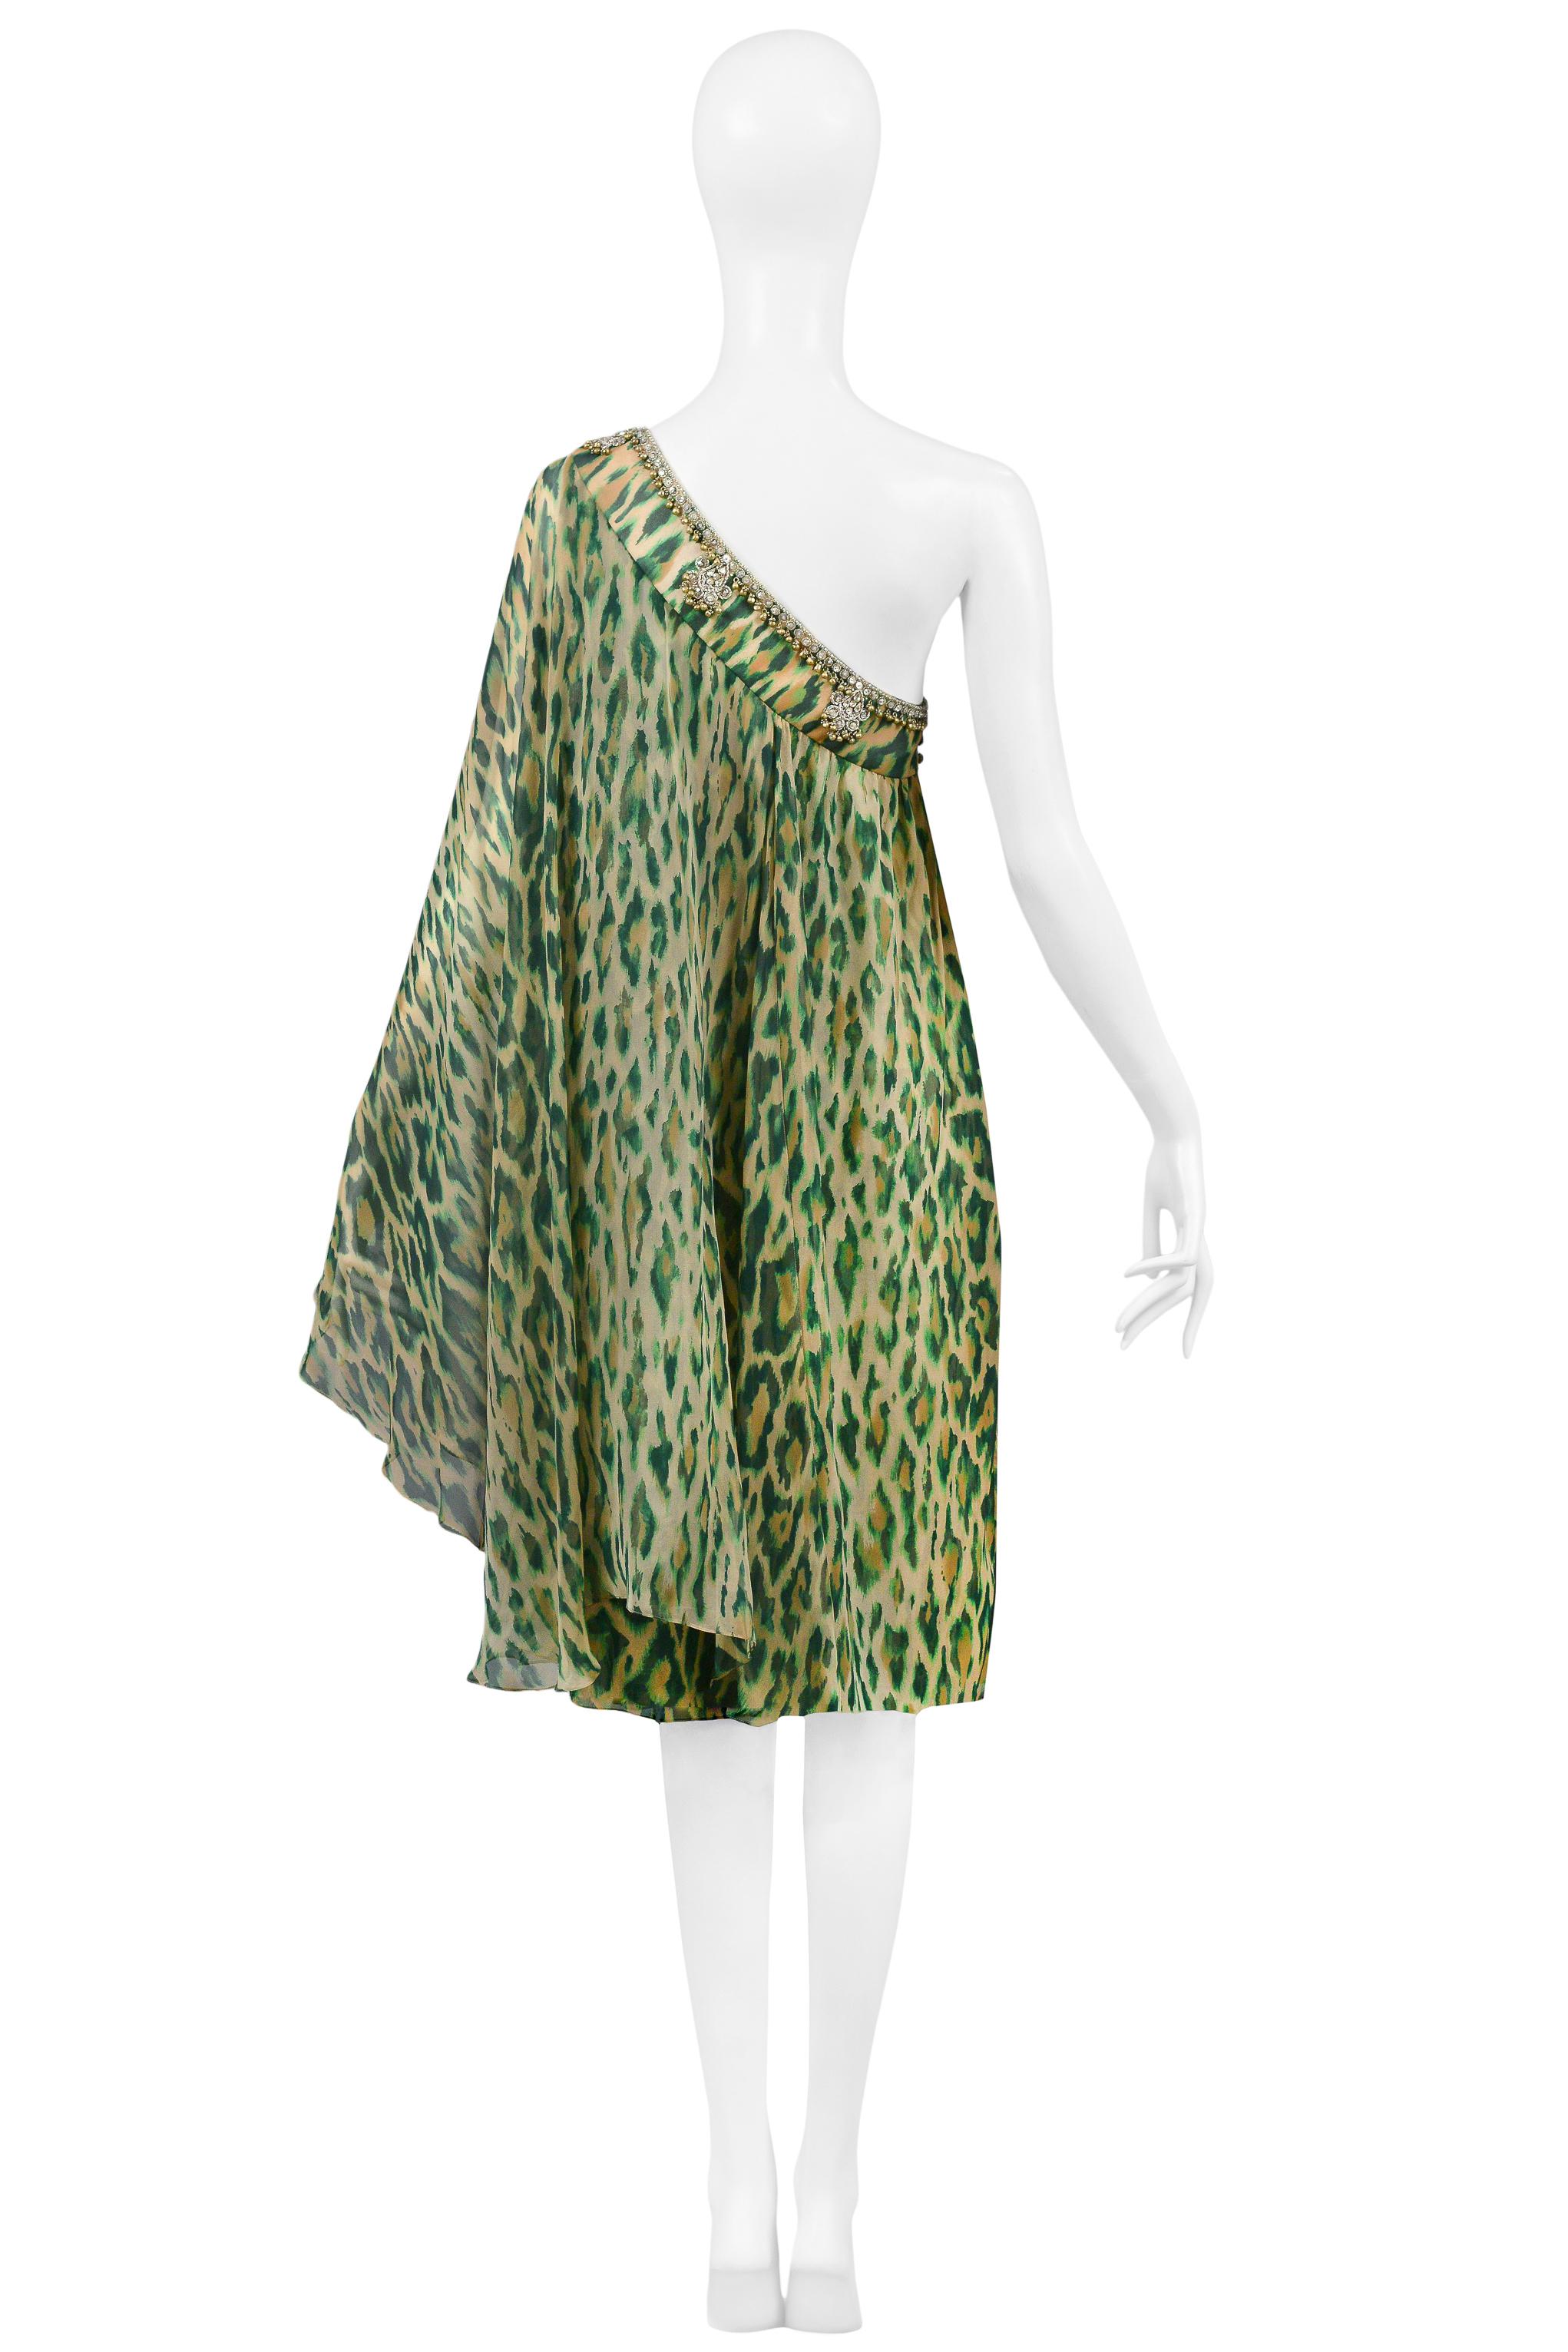 Christian Dior Green Leopard One Shoulder Sari Dress 2008 For Sale 3